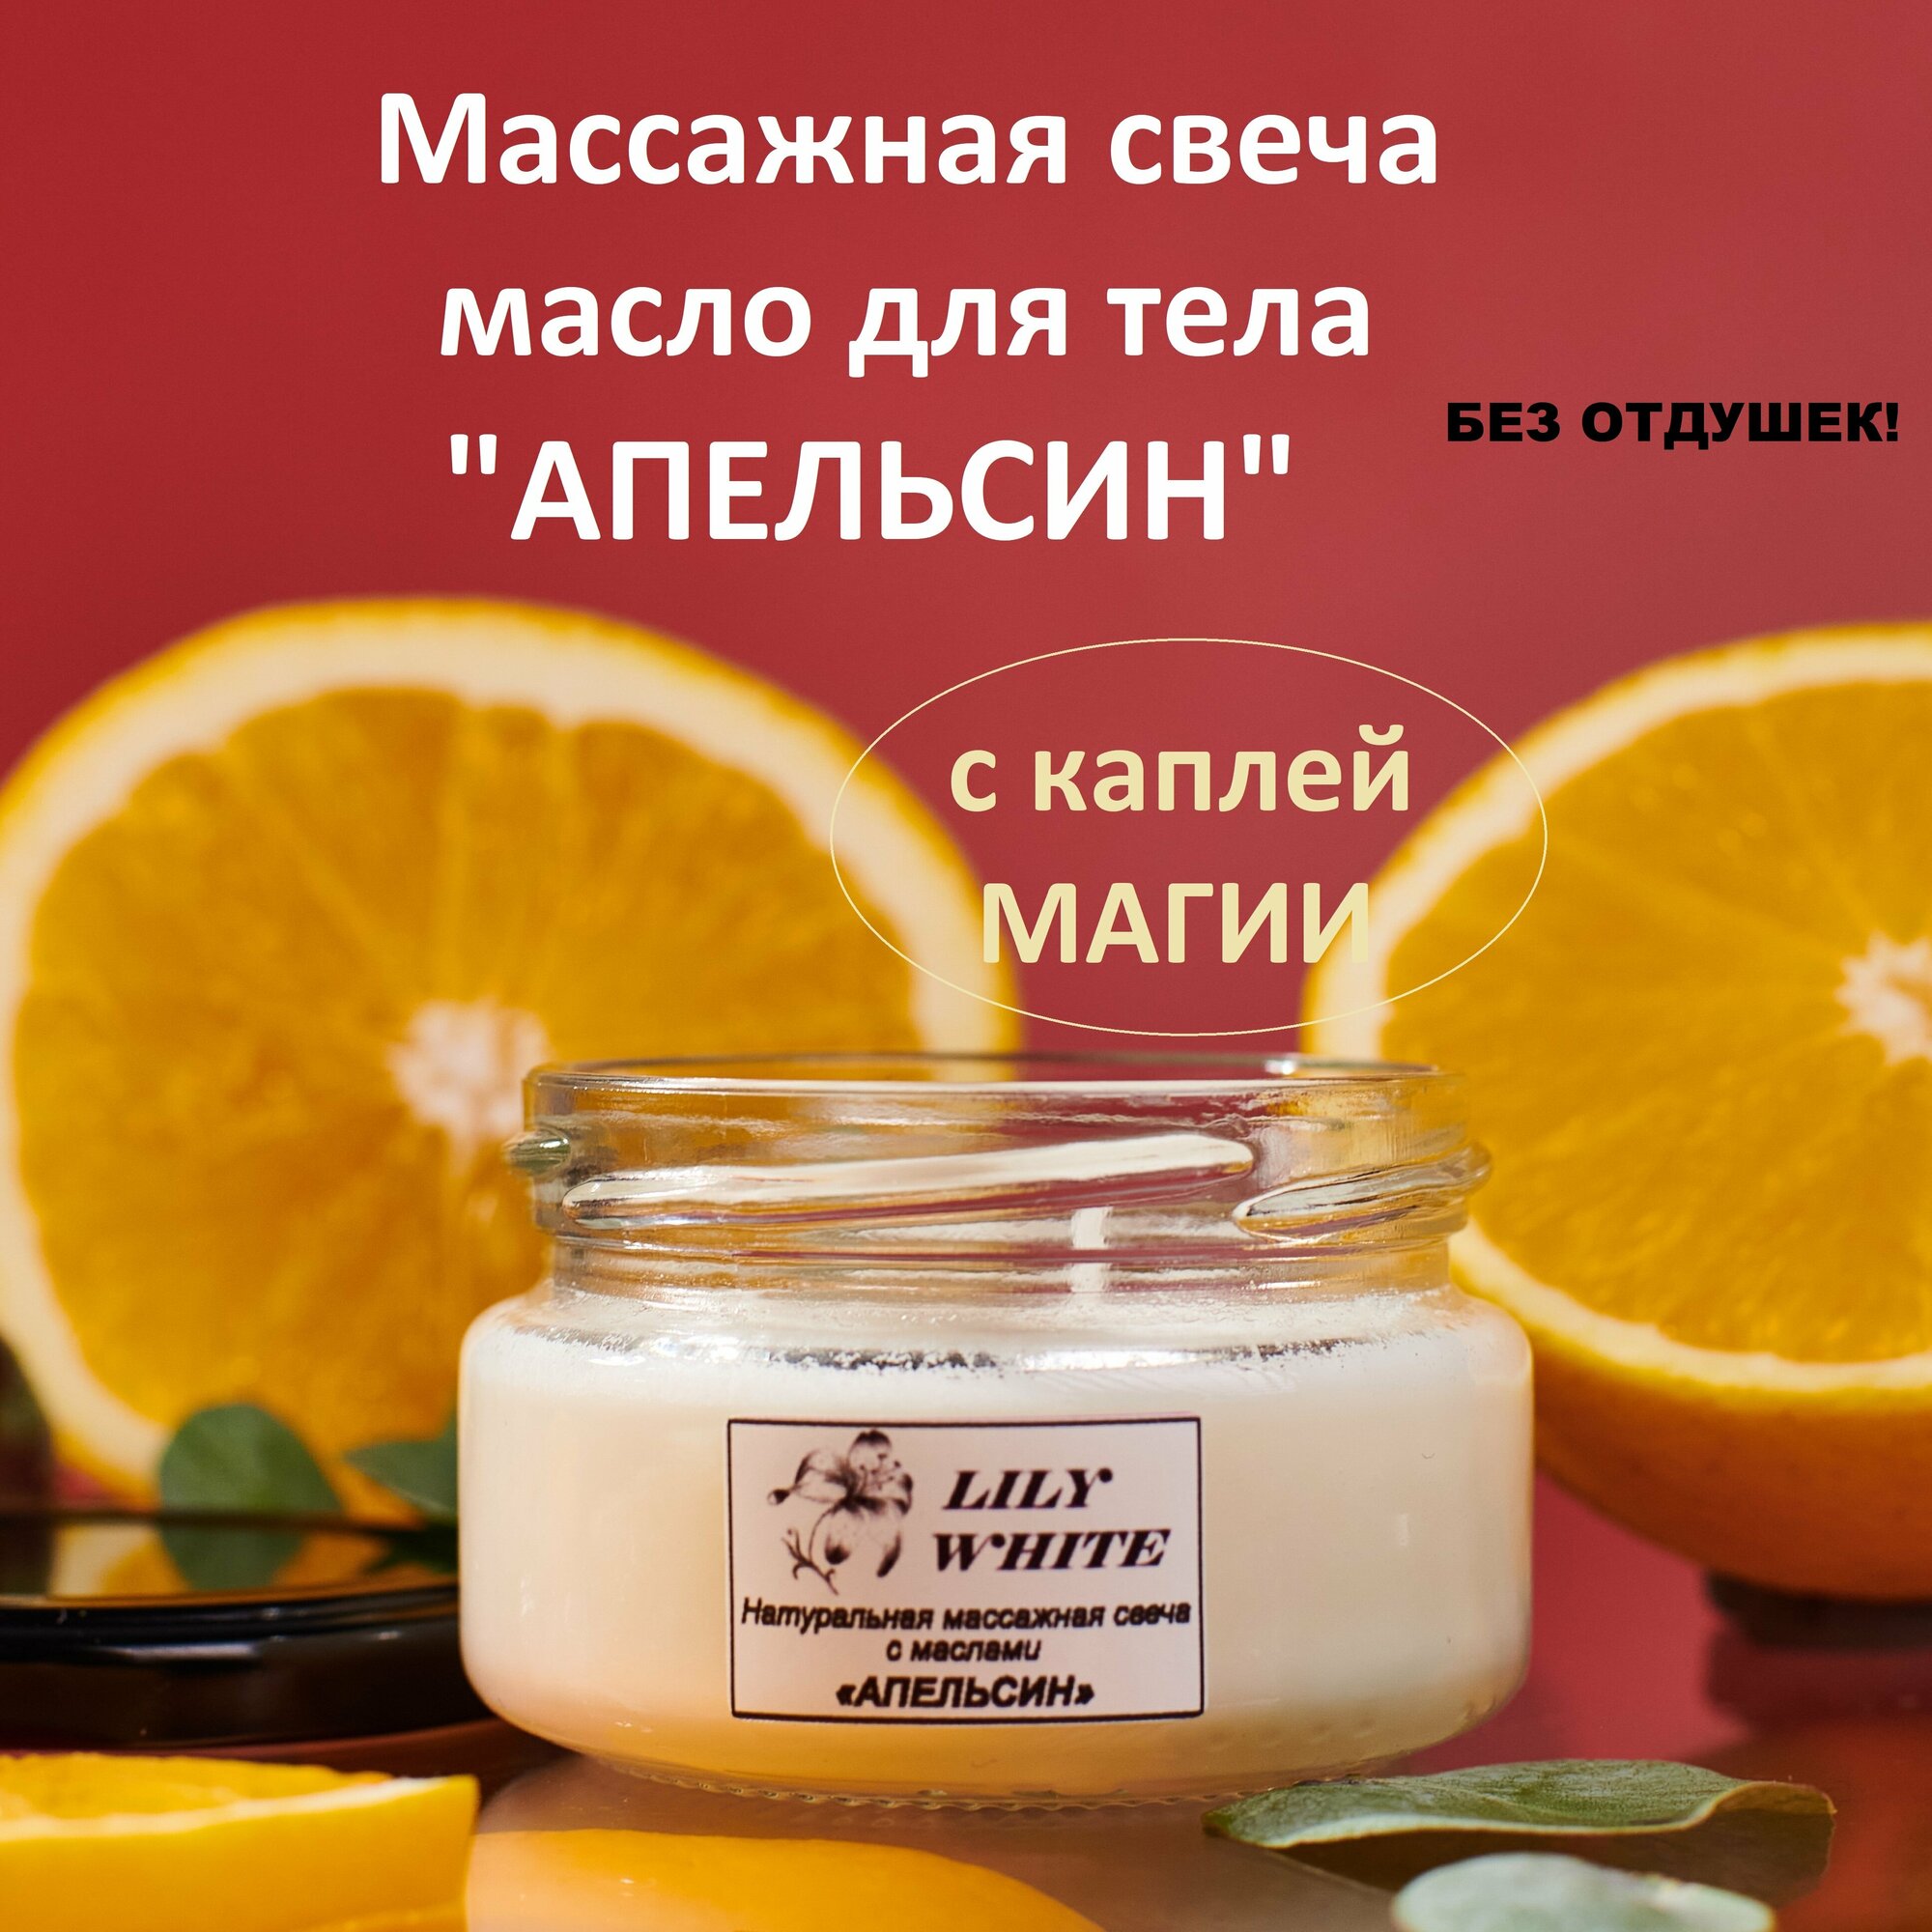 Массажная свеча натуральная с маслами апельсин 50 мл от LILY WHITE